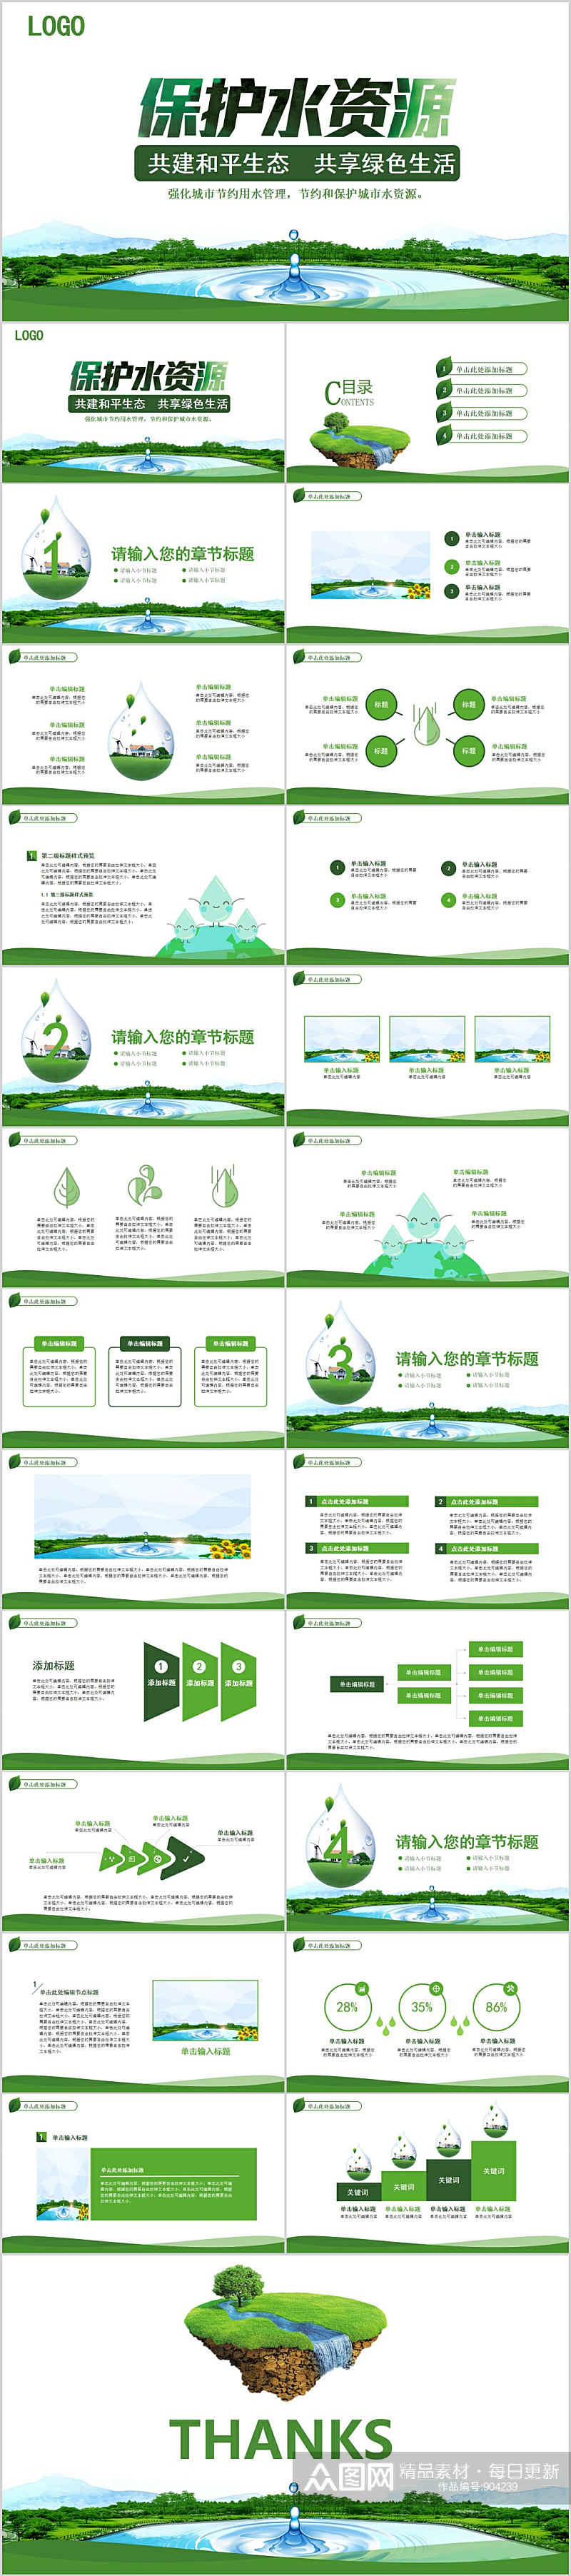 保护水资源绿色生活PPT素材